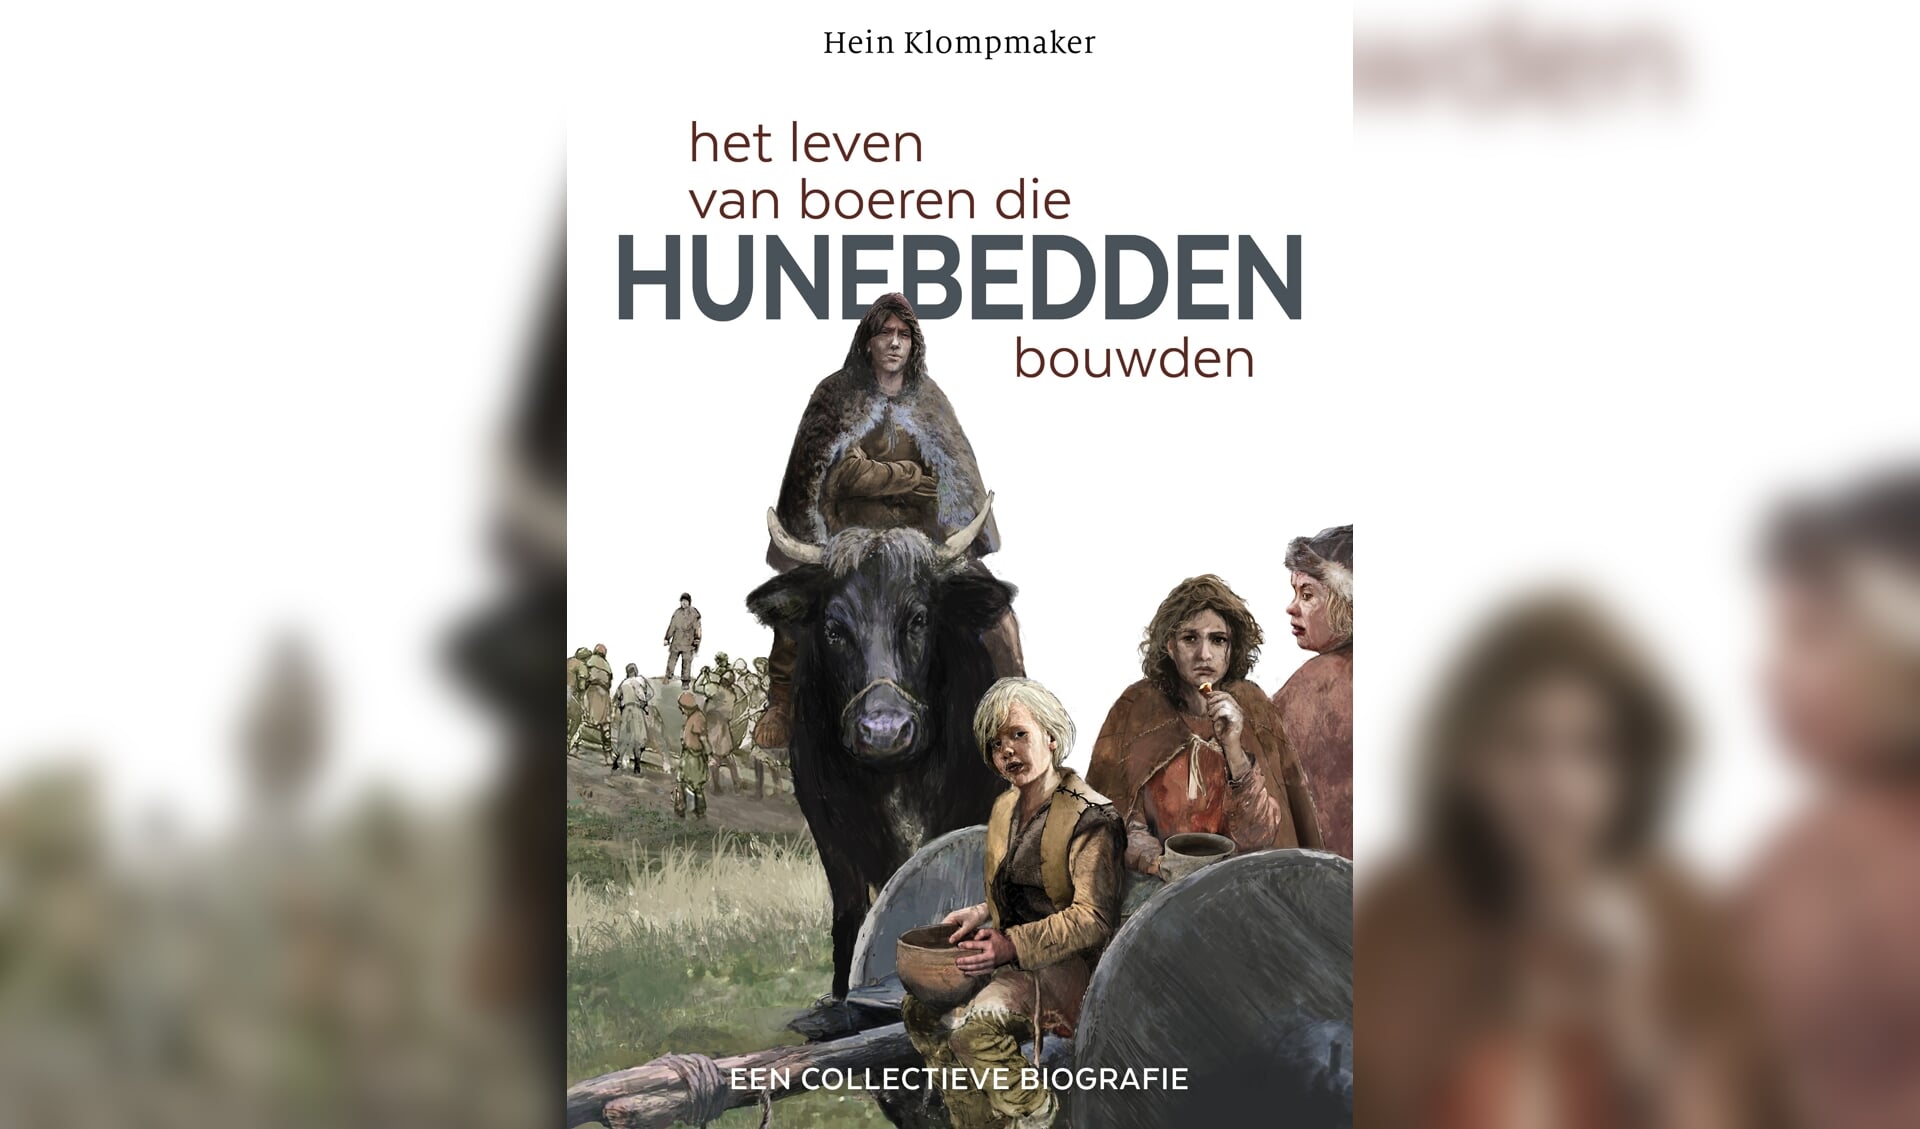 De omslag van het nieuwe boek van Hein Klompmaker.